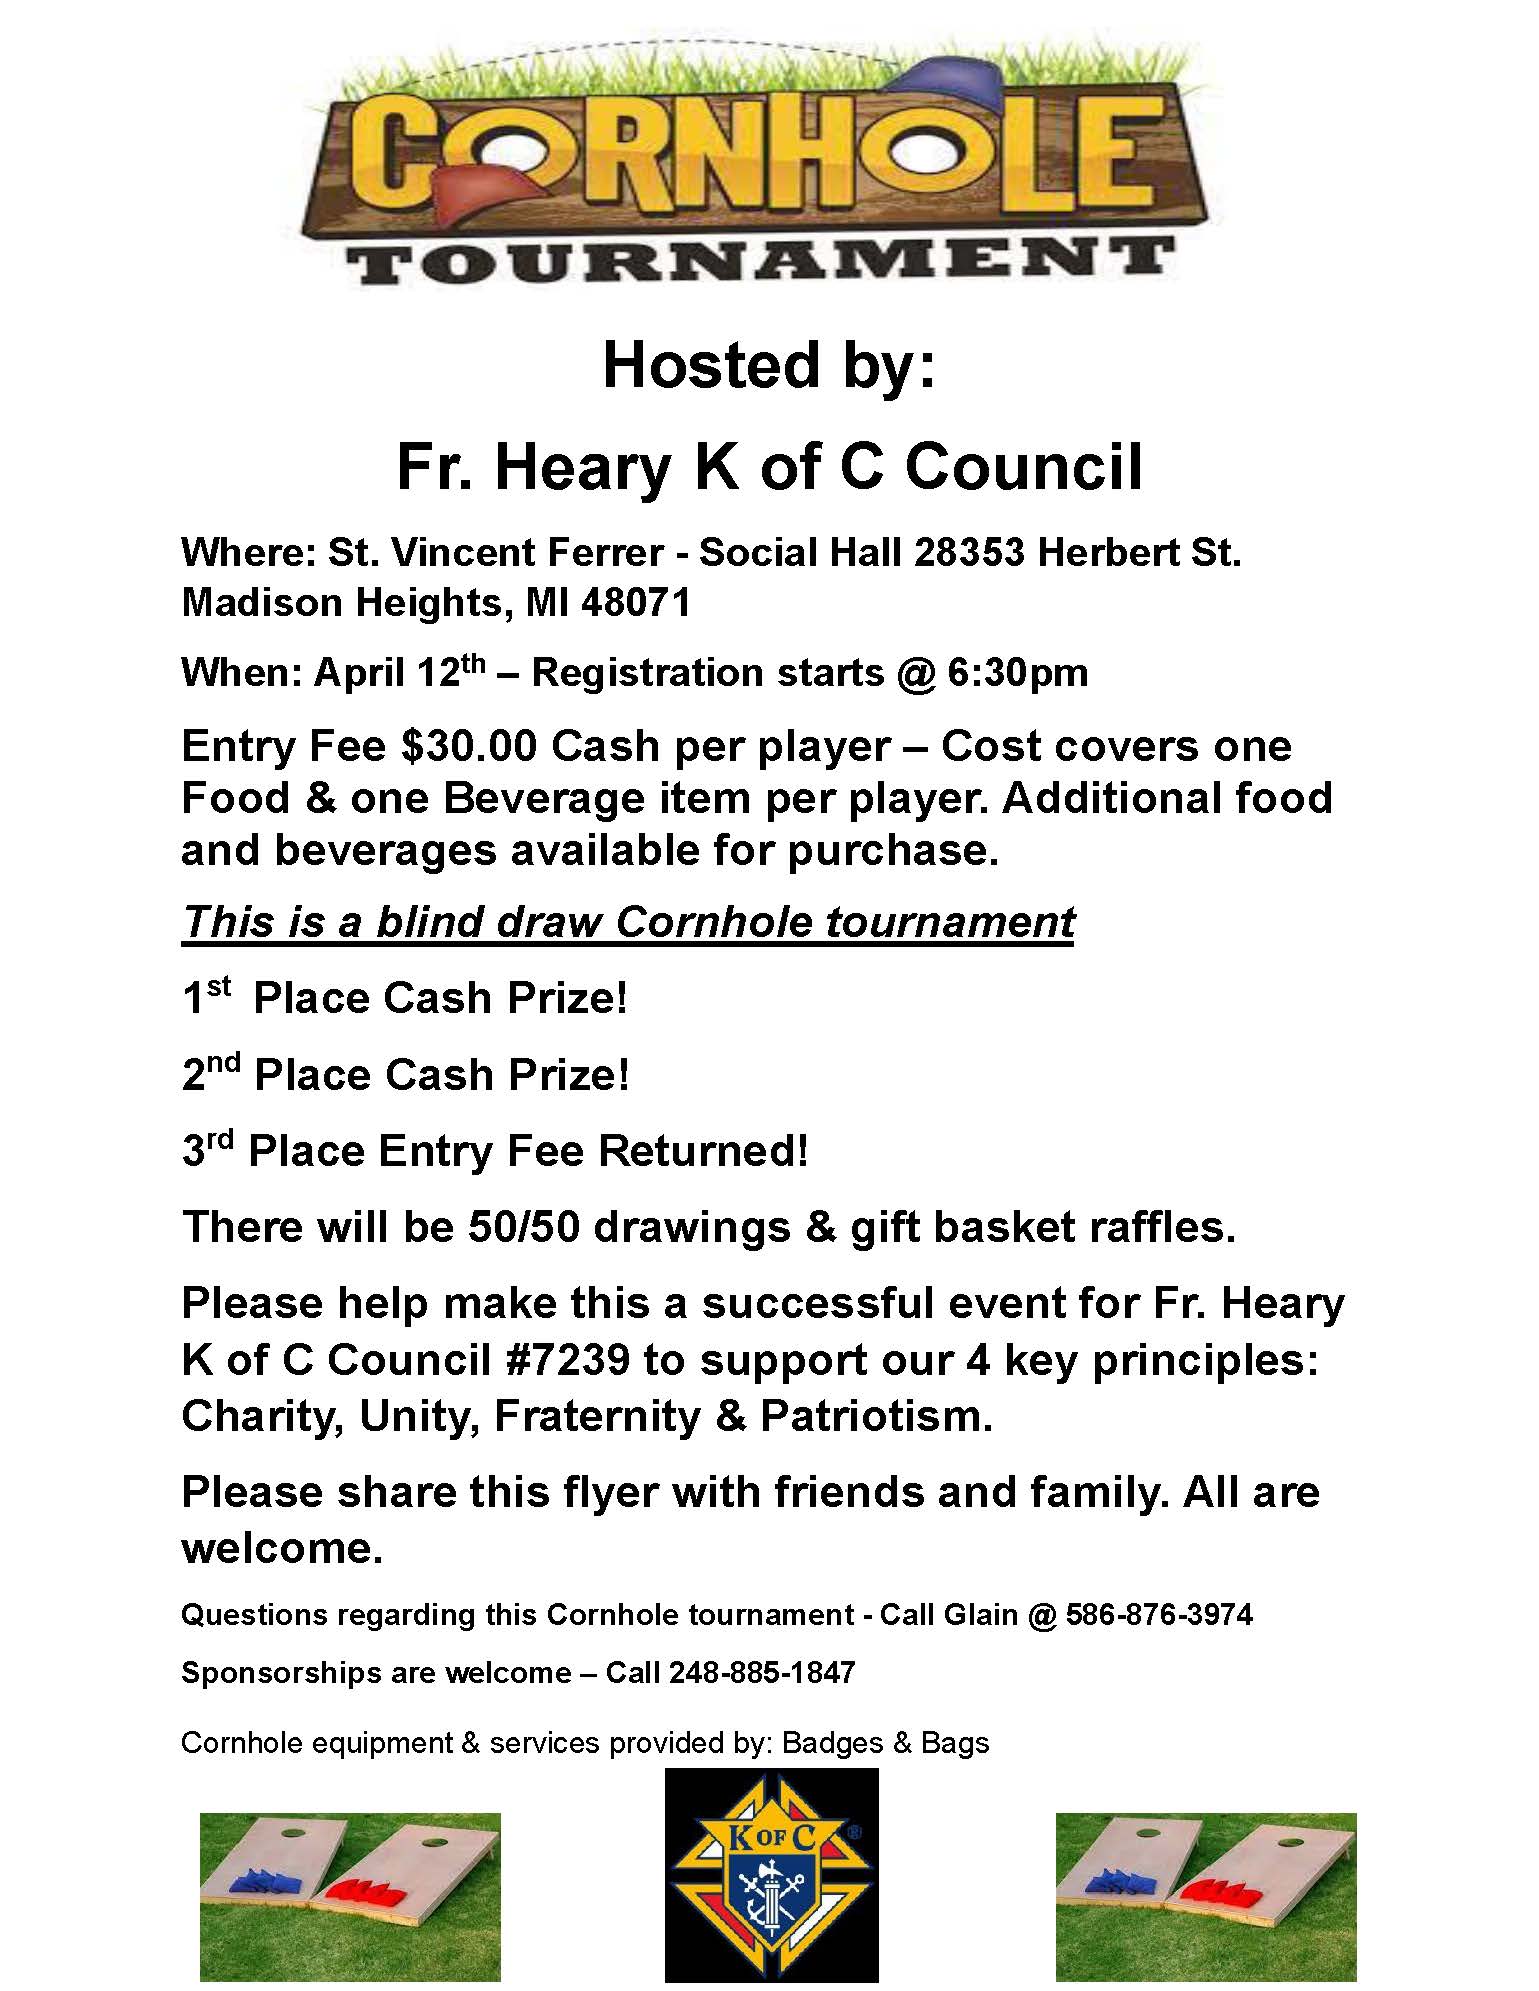 Cornhole Tournament - Registration starts @ 6:30pm